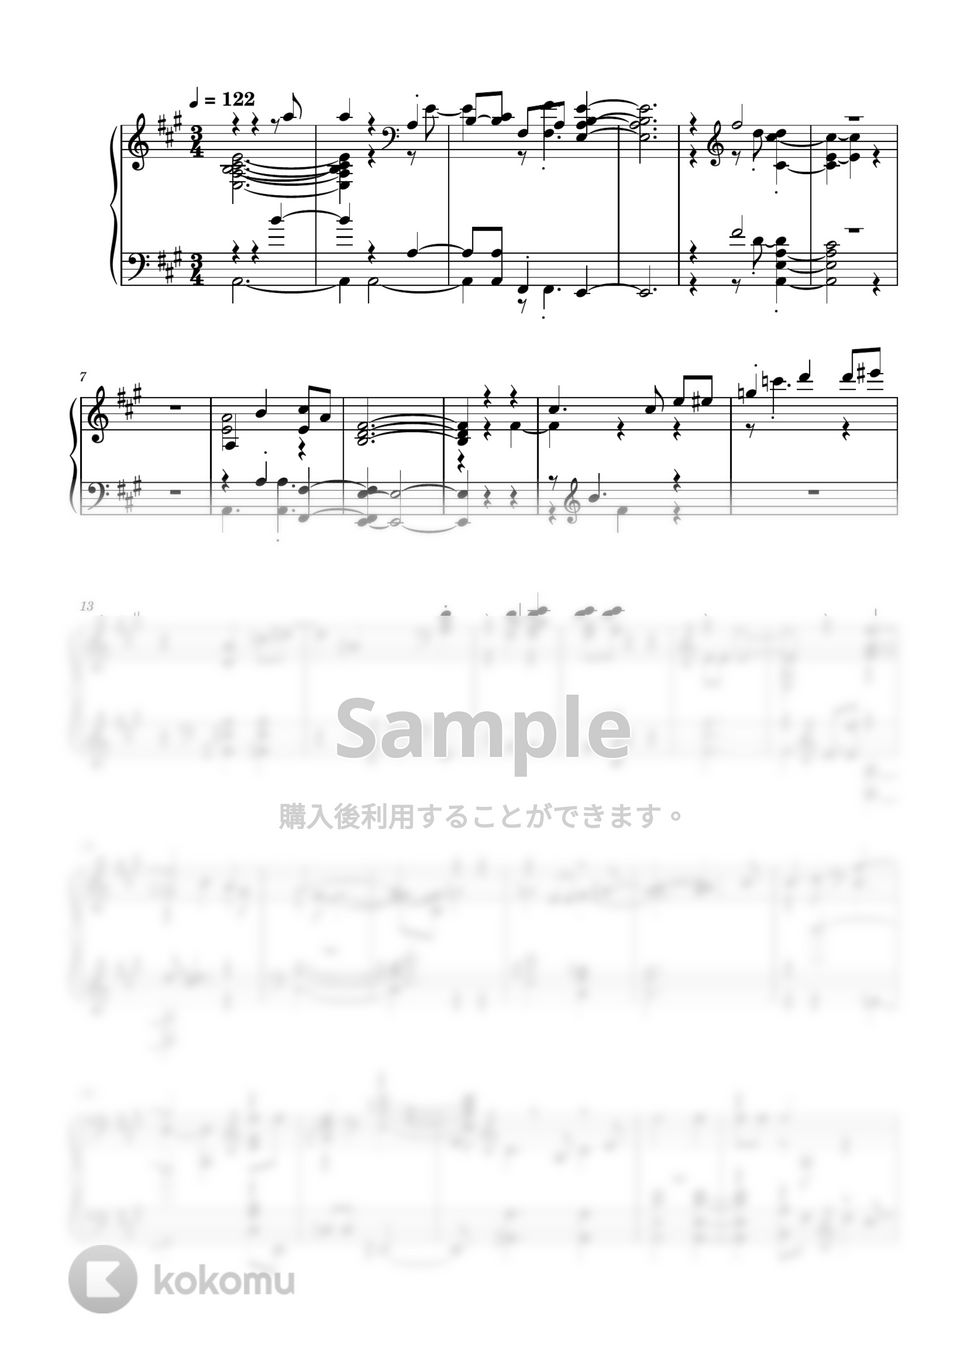 濱田金吾 - 街のドルフィン (ピアノアレンジ) by 濱田金吾